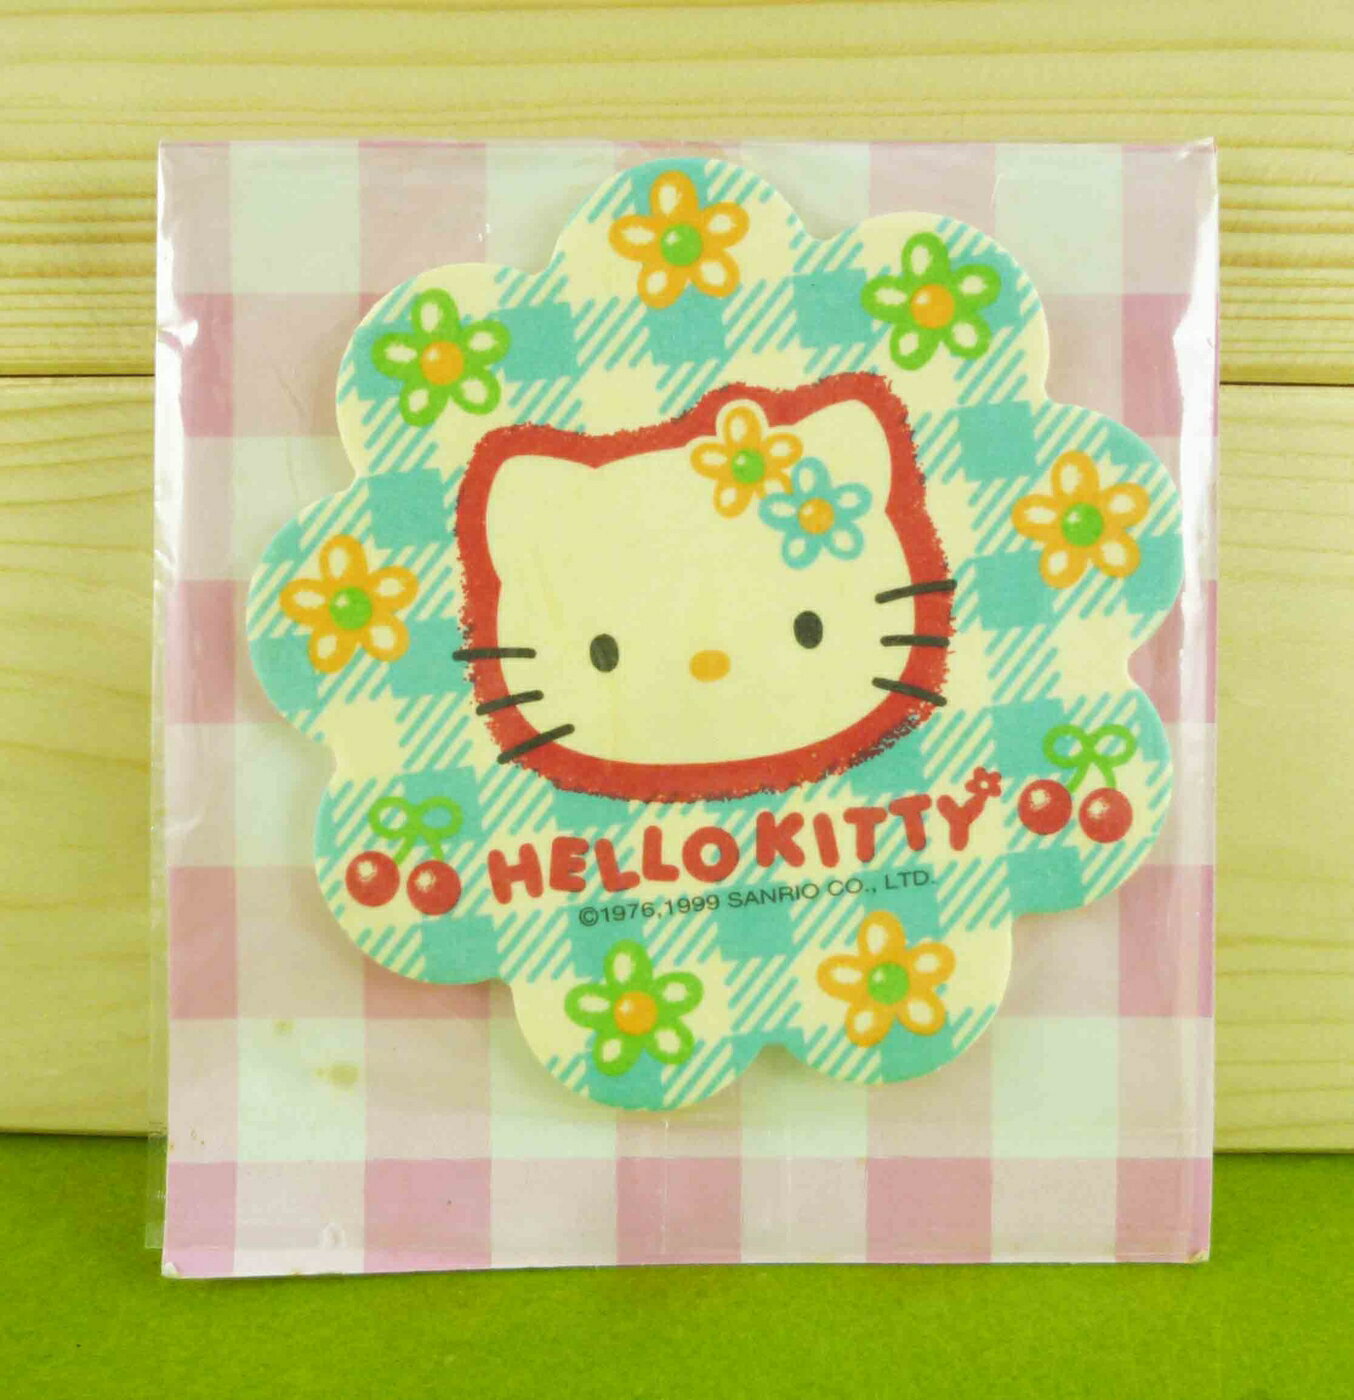 【震撼精品百貨】Hello Kitty 凱蒂貓 造型芳香片-藍色小花造型【共1款】 震撼日式精品百貨